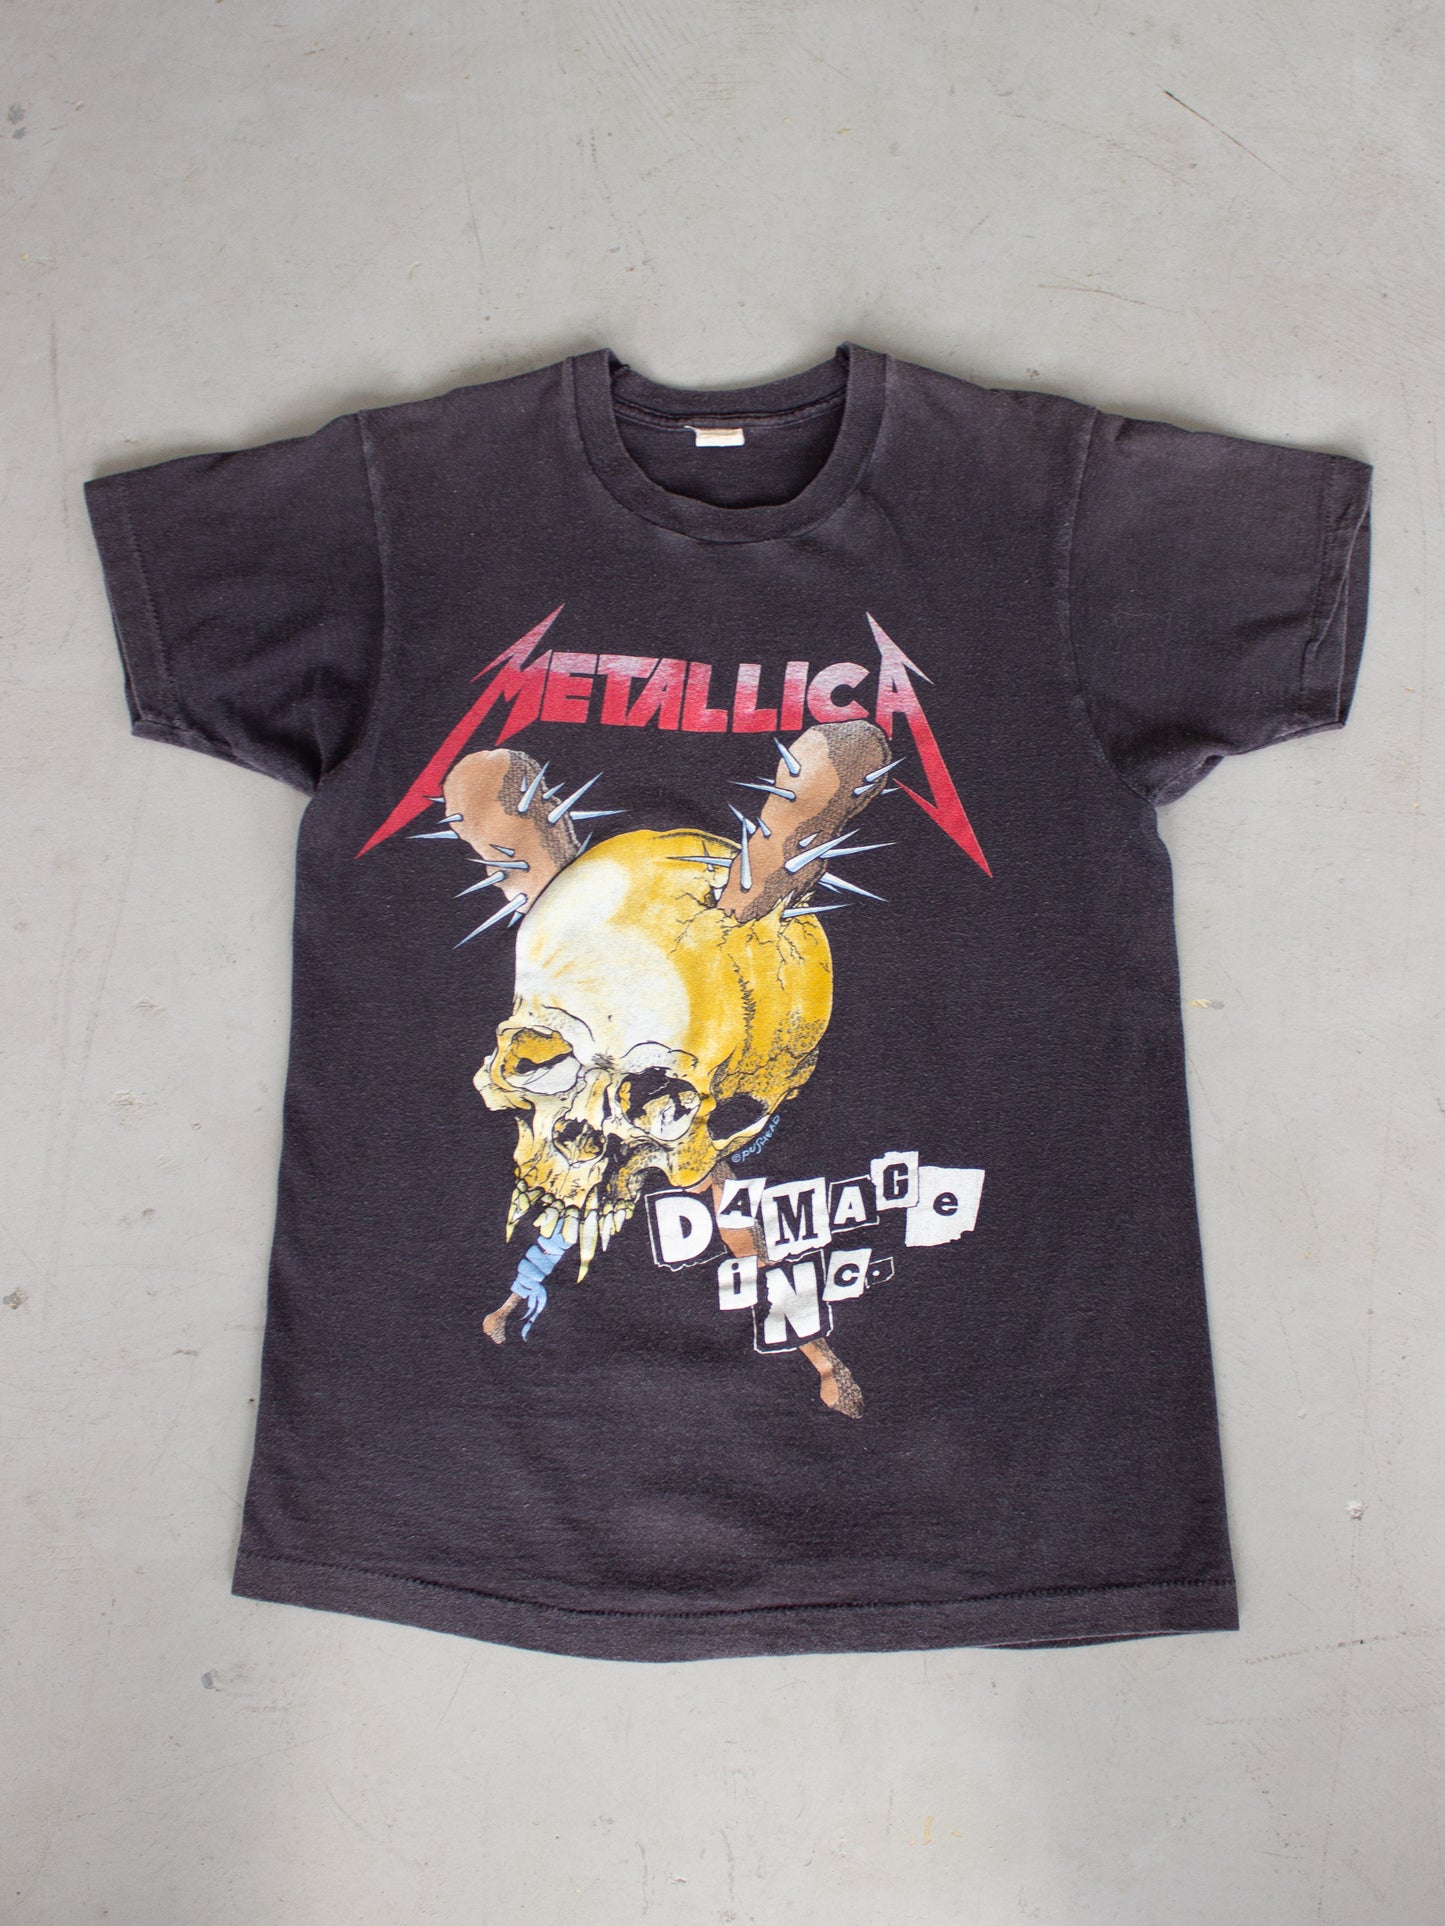 Vintage 1980's Metallica 'Damage Inc.' Tour T-shirt (Men's Small